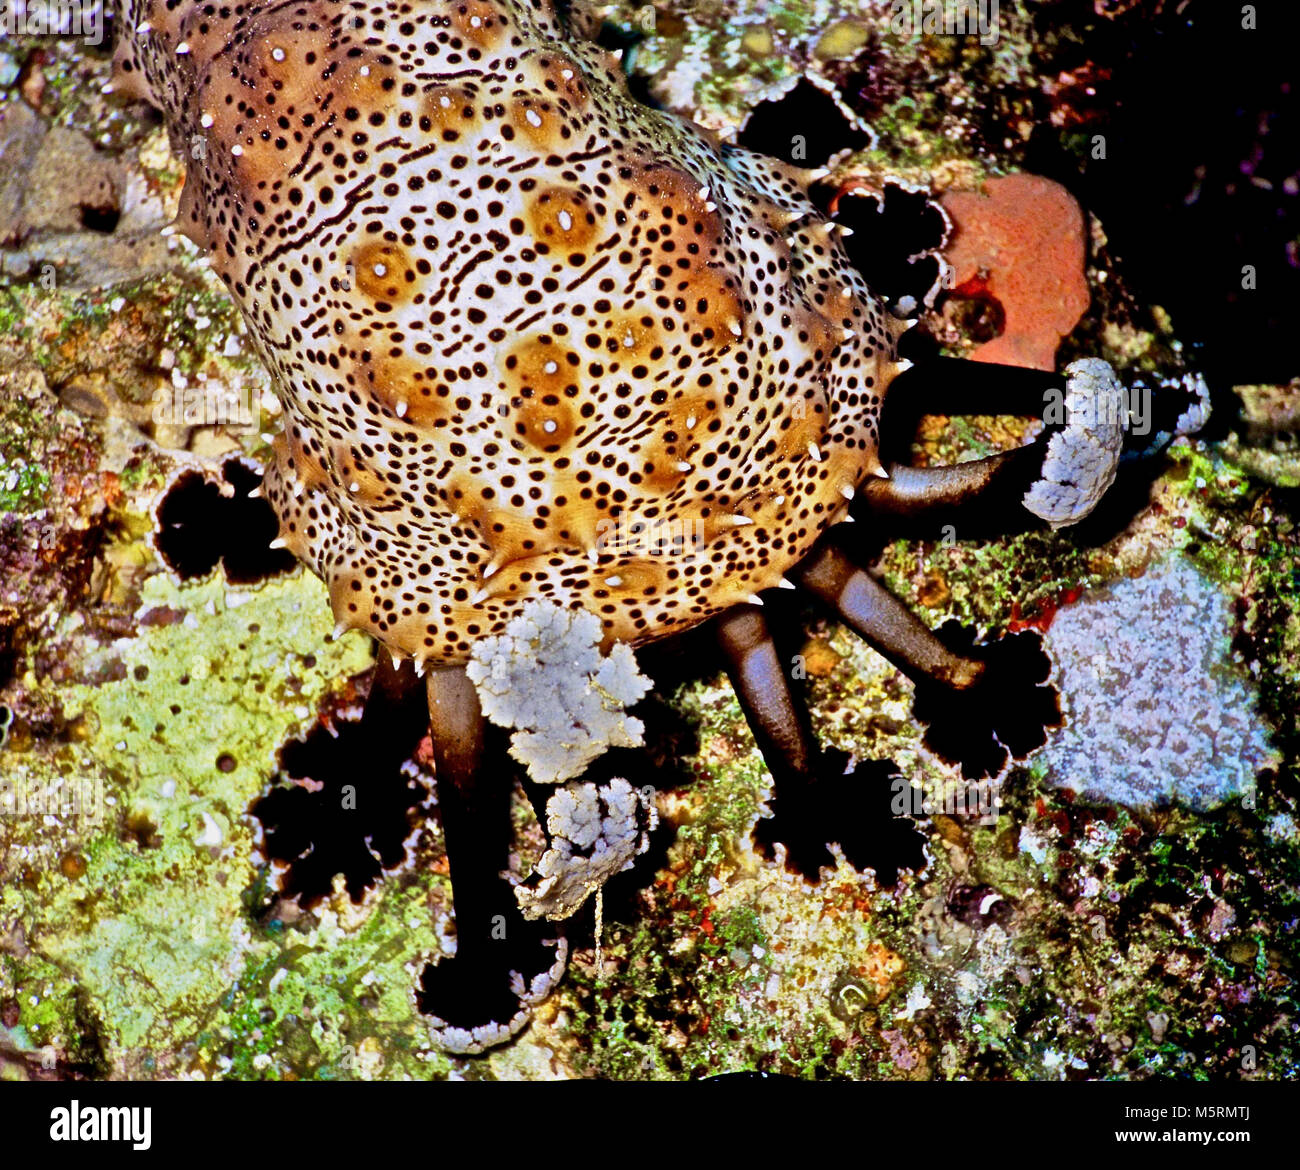 Questo è un ritratto di close-up di la parte anteriore di un adulto cetriolo marittimo (Pearsonothuria graeffei: 30 cm. lungo): un holothurian. Esso mostra la zona intorno alla bocca, il quale è circondato da paddle-come tentacoli. Queste sono di colore nero sulla parte superiore, bianco sotto e raschiare il substrato di alghe e altro materiale organico che vengono poi trasferiti alla bocca. Come i ricci di mare e stelle marine, si muove per mezzo di numerose azionato idraulicamente i piedi di tubo. Quando allarmato, scoraggia i potenziali predatori mediante estrusione di filamenti contenenti neuro-tossine come echinoside A. fotografato nel Mar Rosso egiziano. Foto Stock